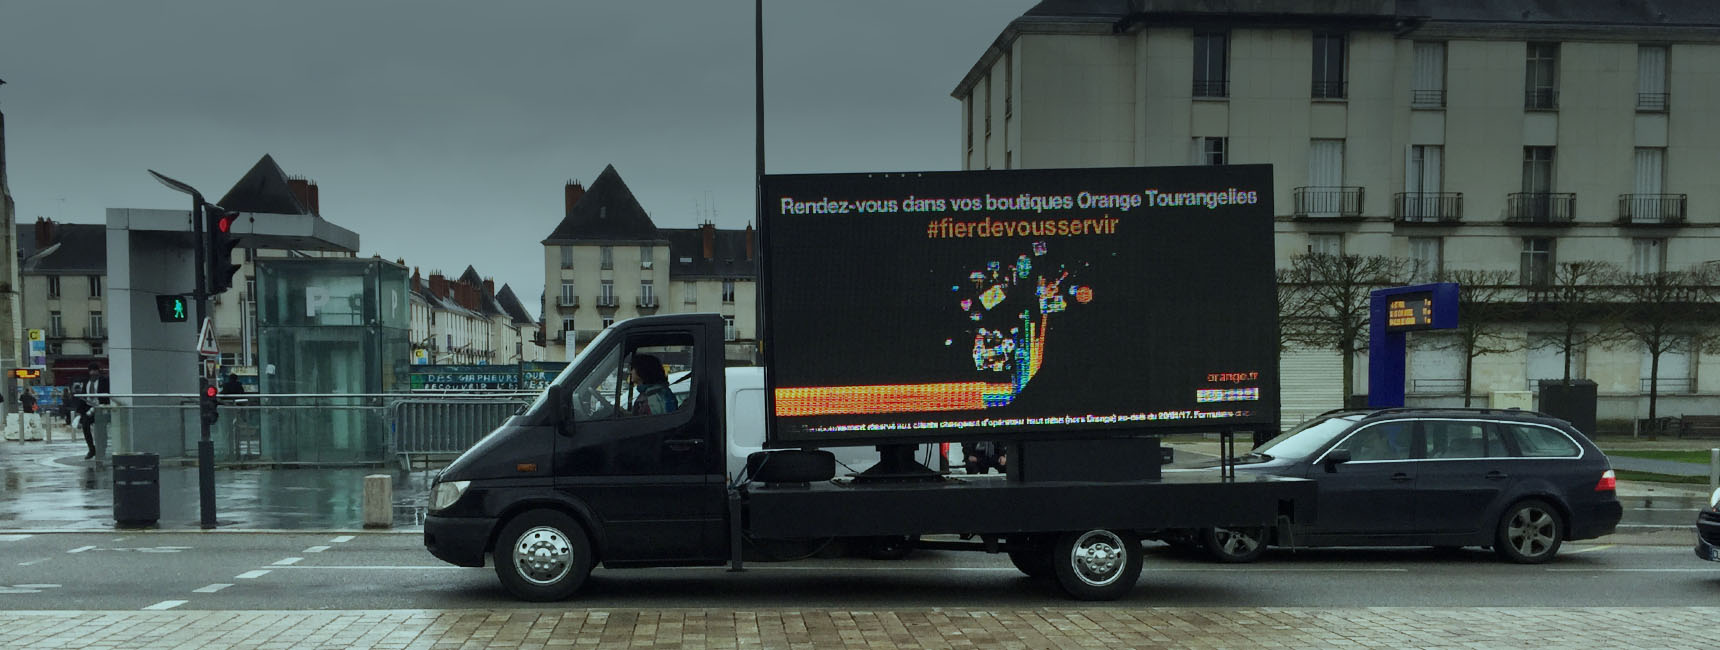 Dispositifs d'affichage mobile - Keemia Nantes Agence marketing local en région Atlantique